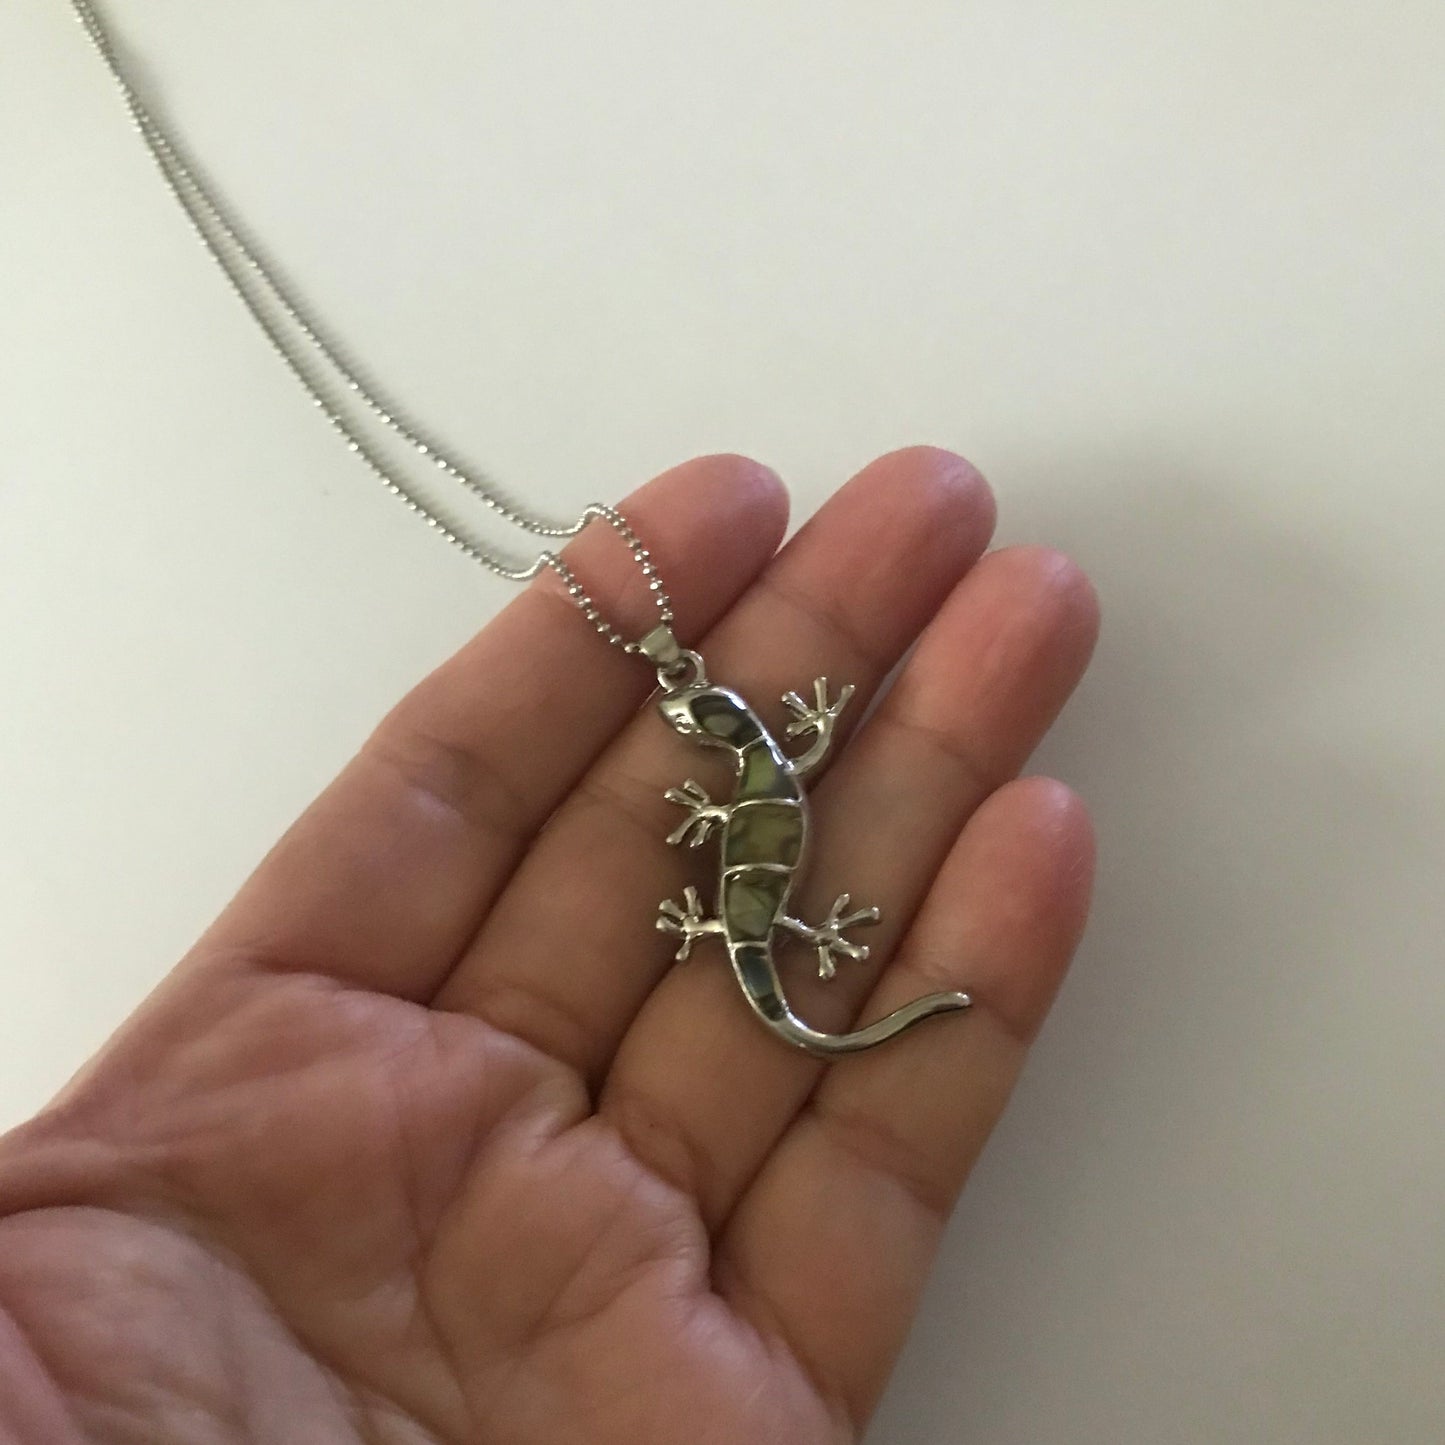 Lizard pendant charm necklace